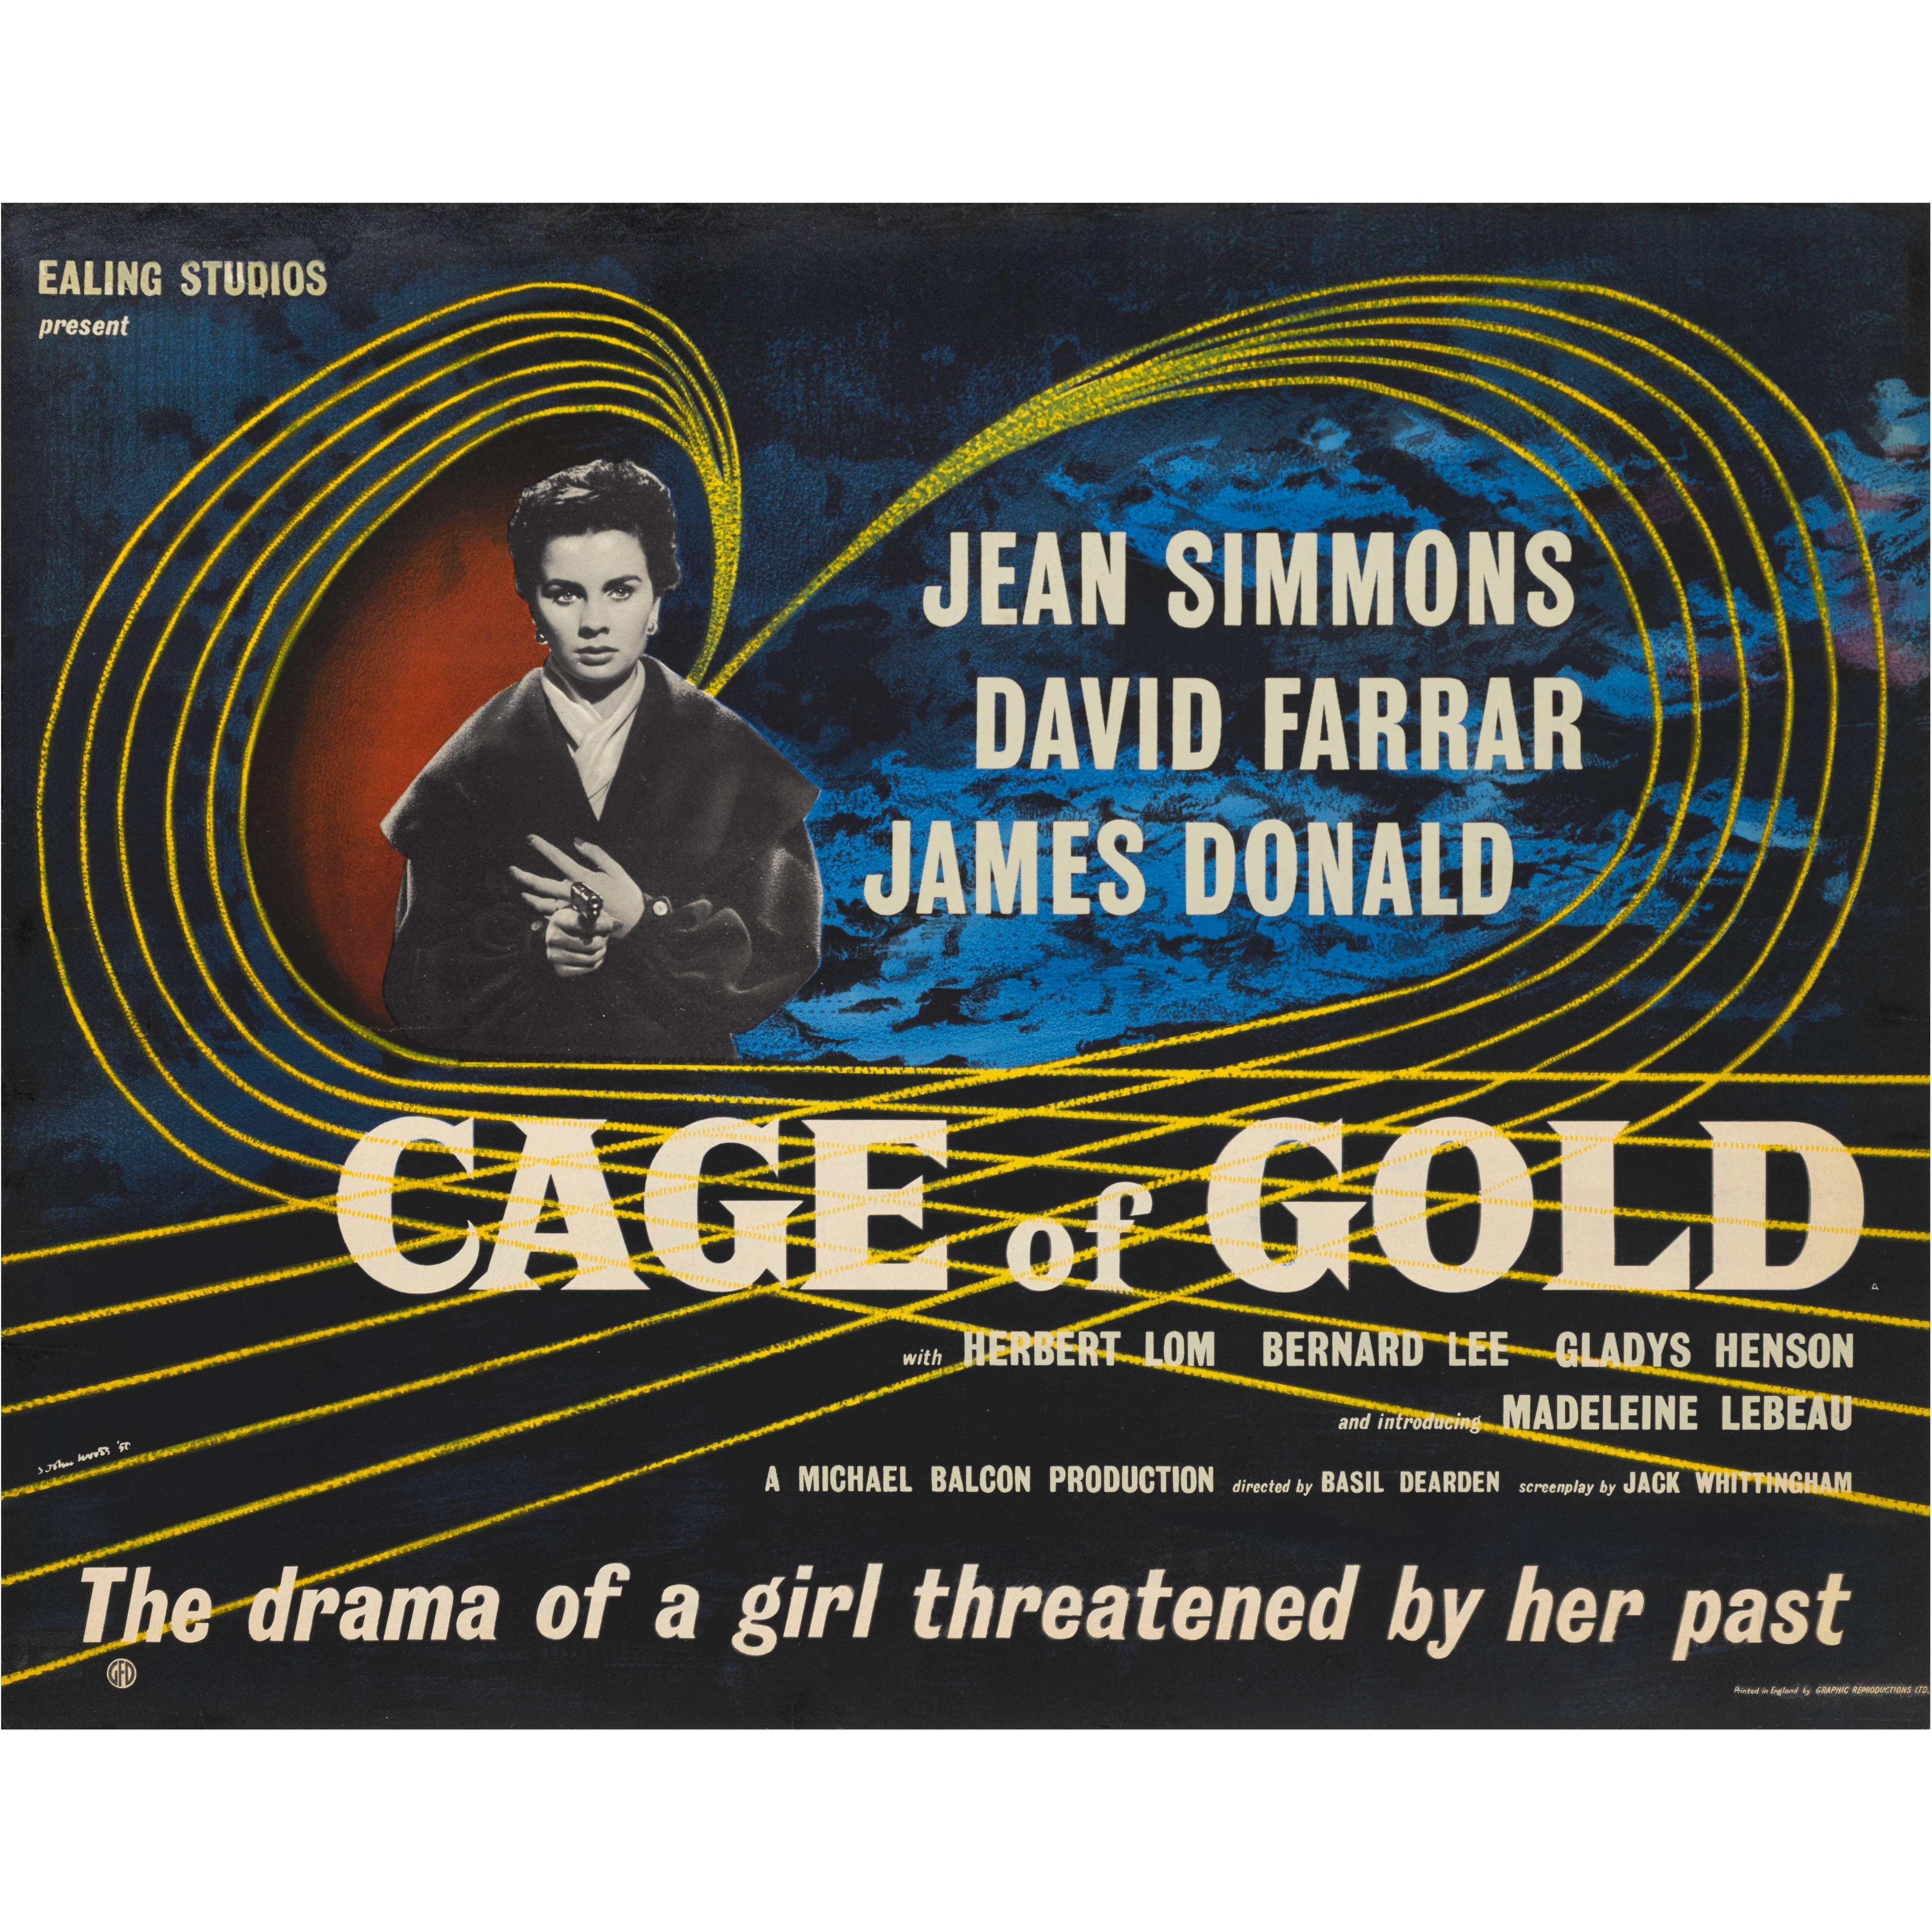 "Cage of Gold" Original British Film Poster